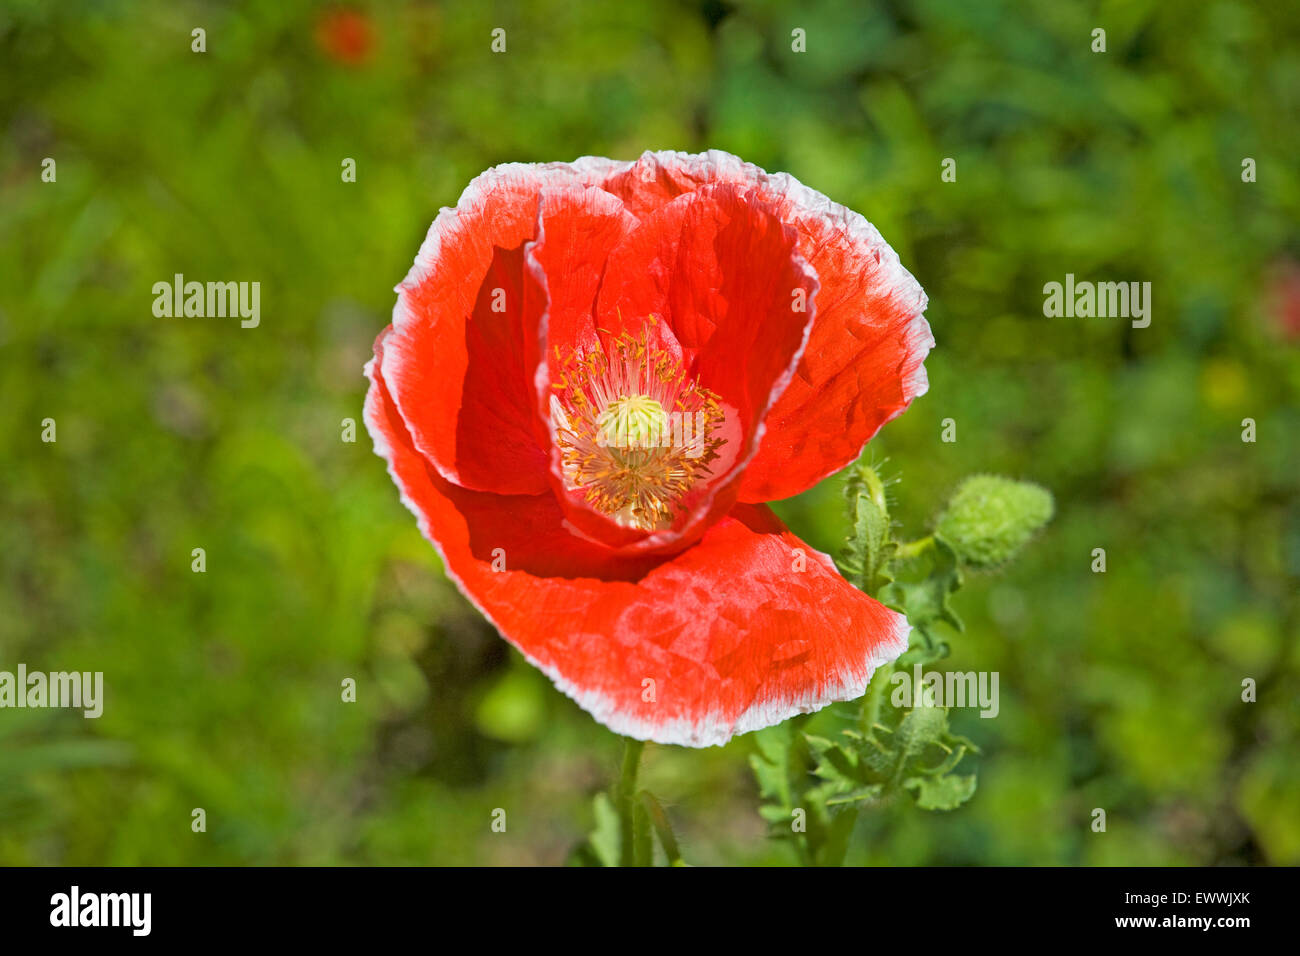 portrait of a poppy growing in a field Stock Photo